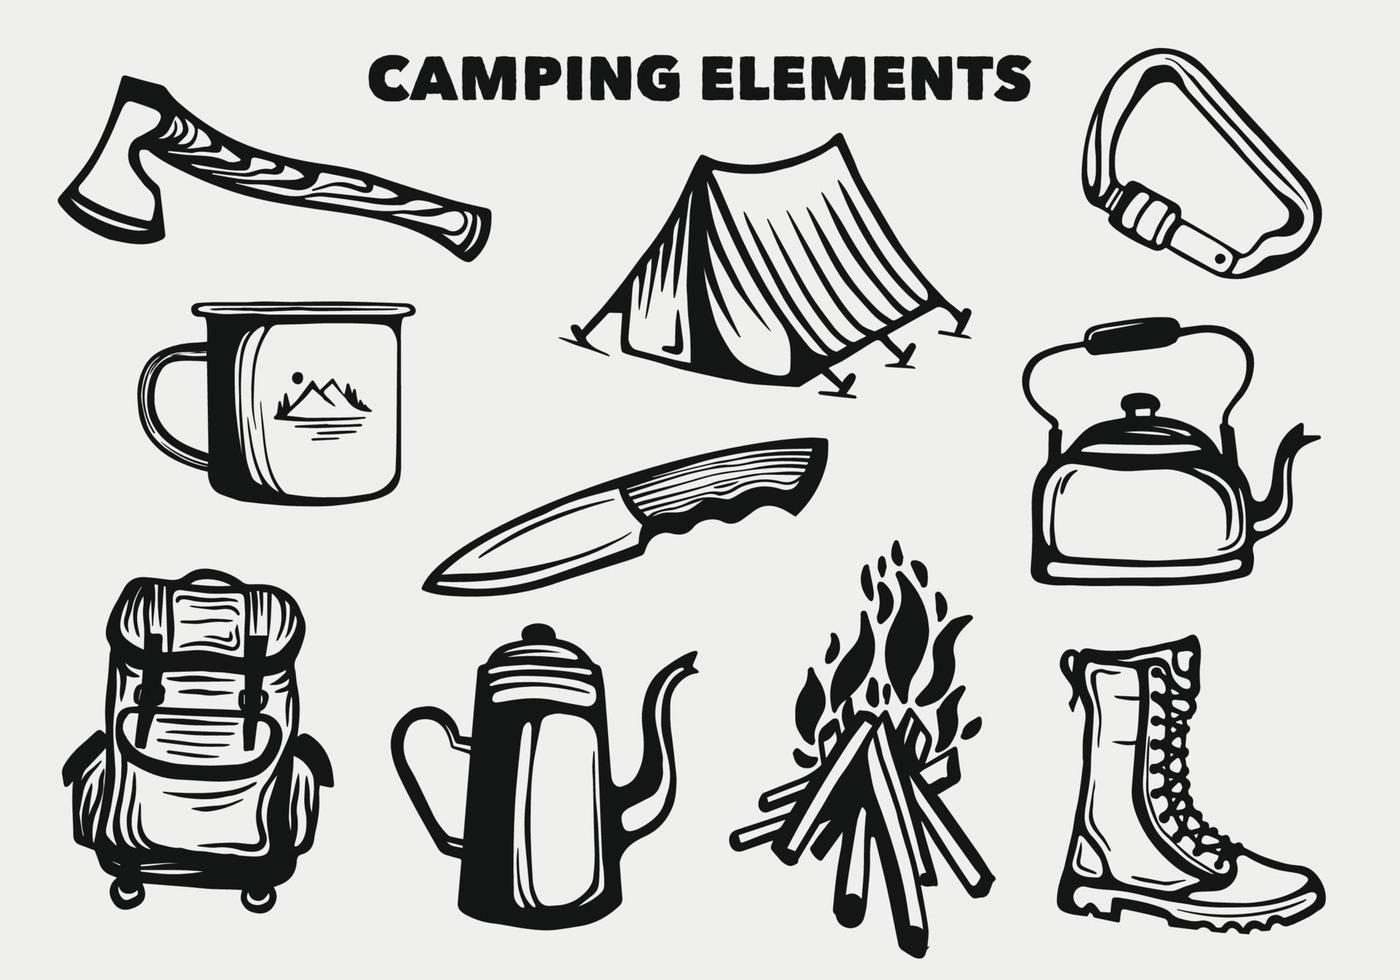 Camping-Elemente und Sammlung von Wanderwerkzeugen vektor